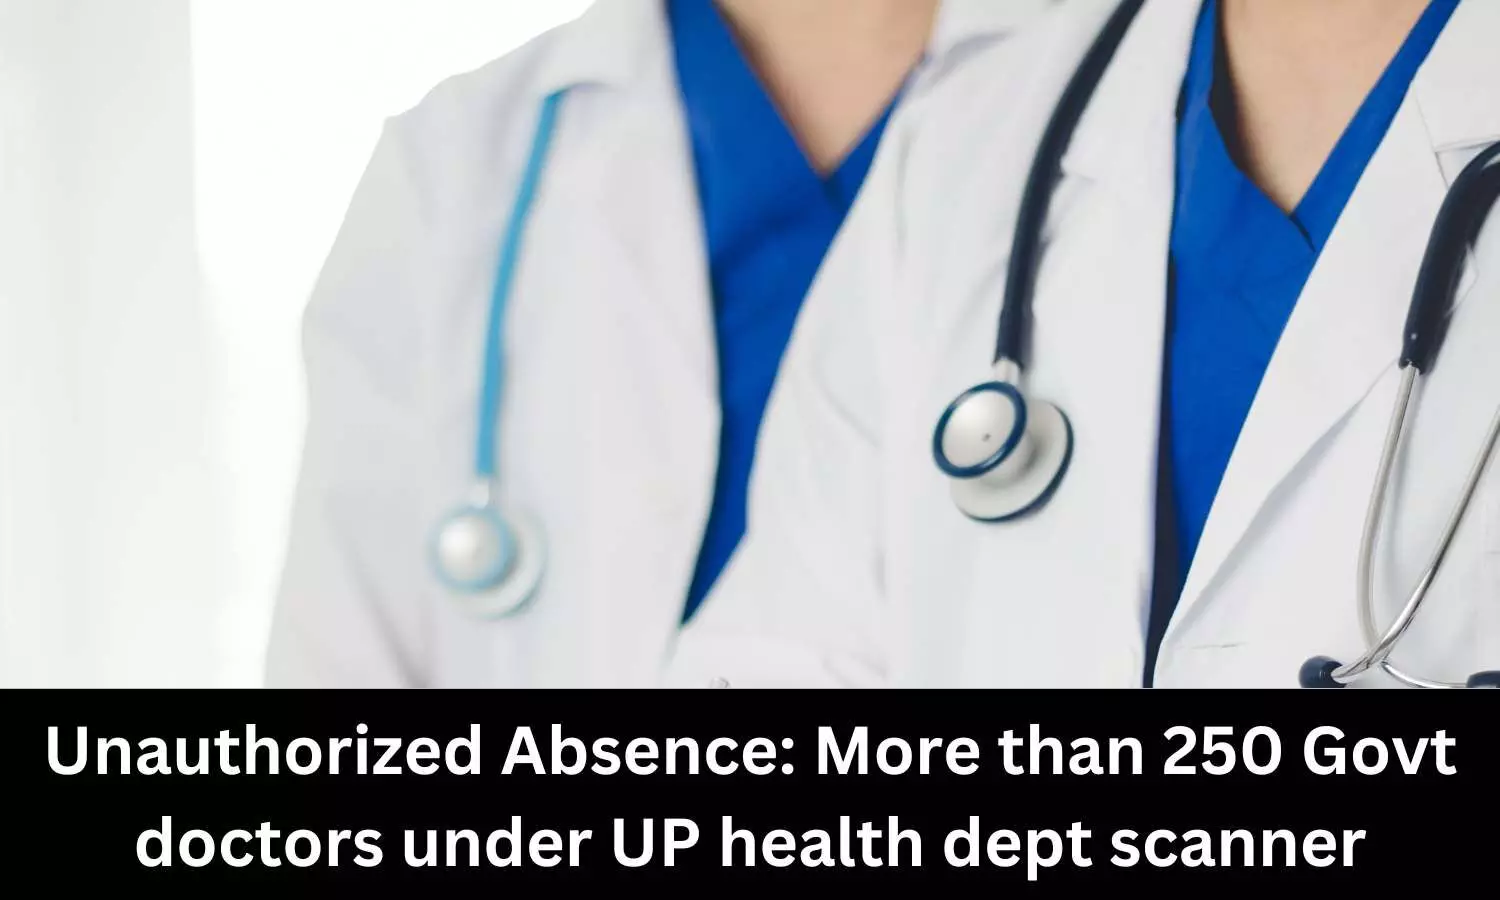 Over 250 Govt doctors under UP Health Dept radar for not rejoining duty after sabbatical